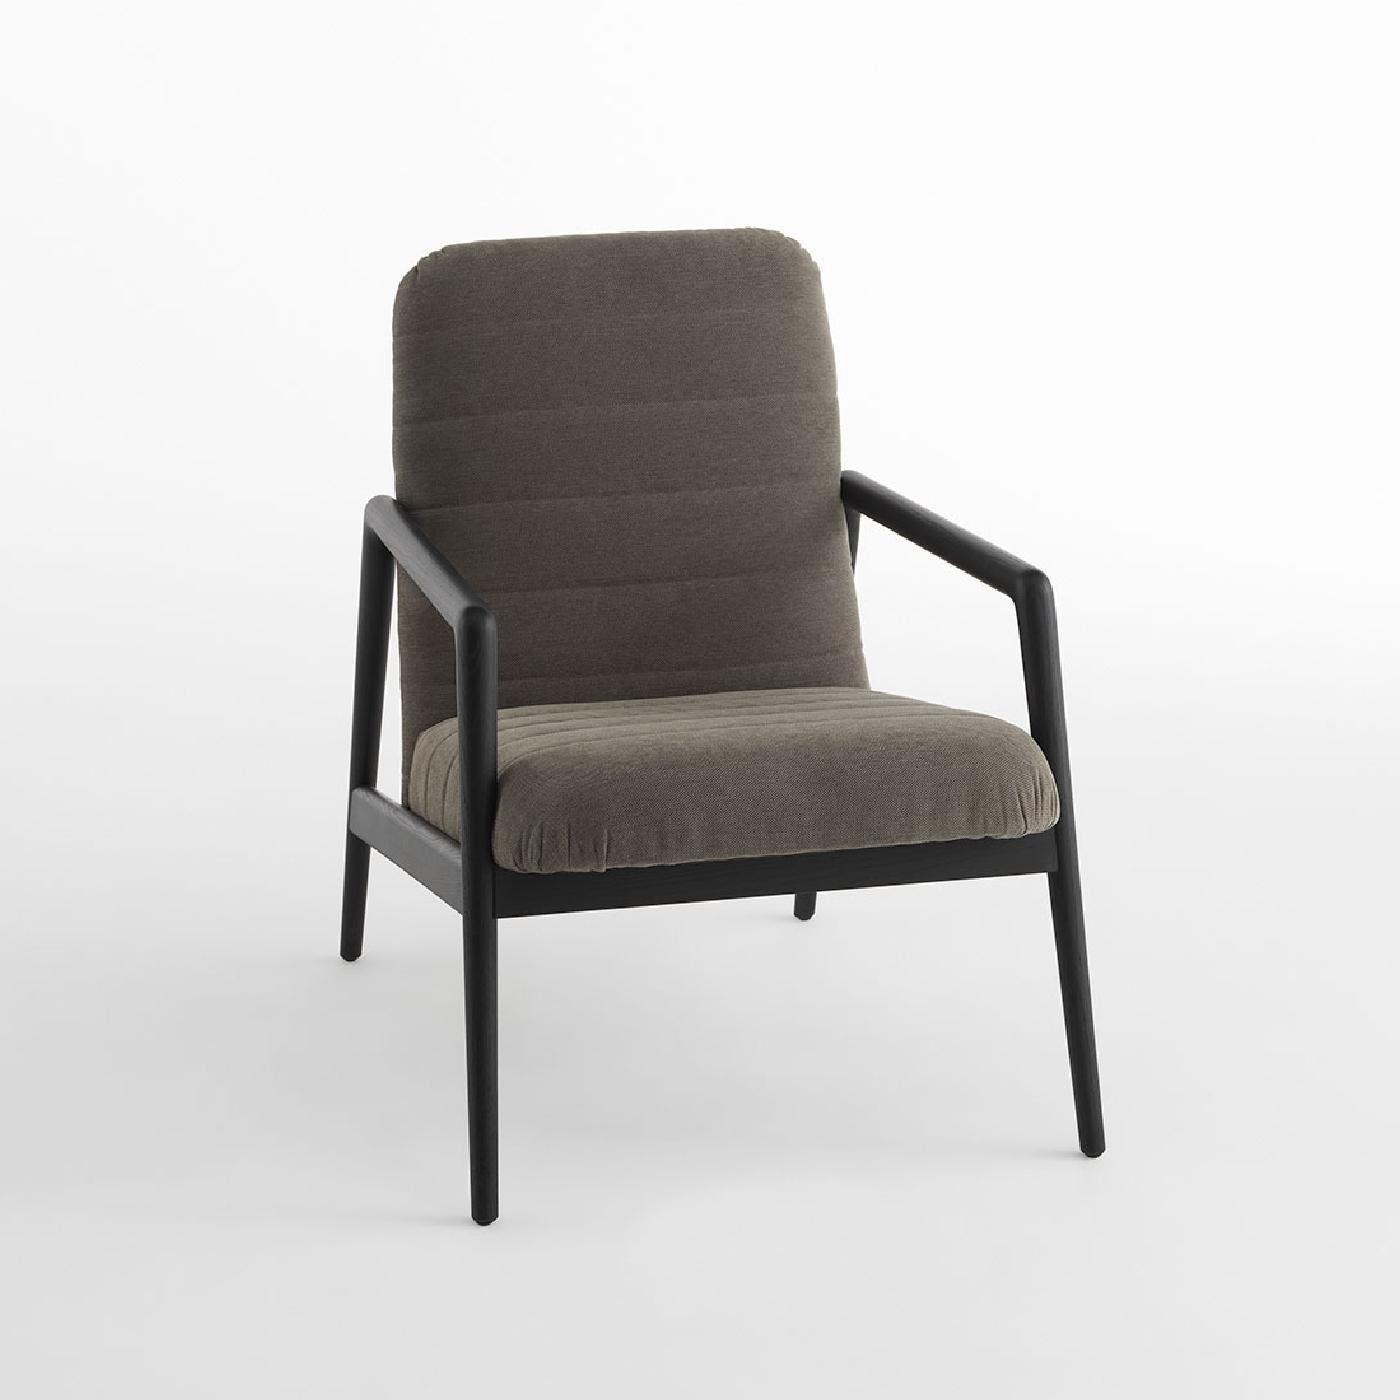 Une inspiration nordique et un design élégant et minimaliste caractérisent ce superbe fauteuil du Studio Balutto. Sophistiqué et ergonomique, il affiche une allure intemporelle marquée par un cadre en frêne massif avec une finition noire mate. La